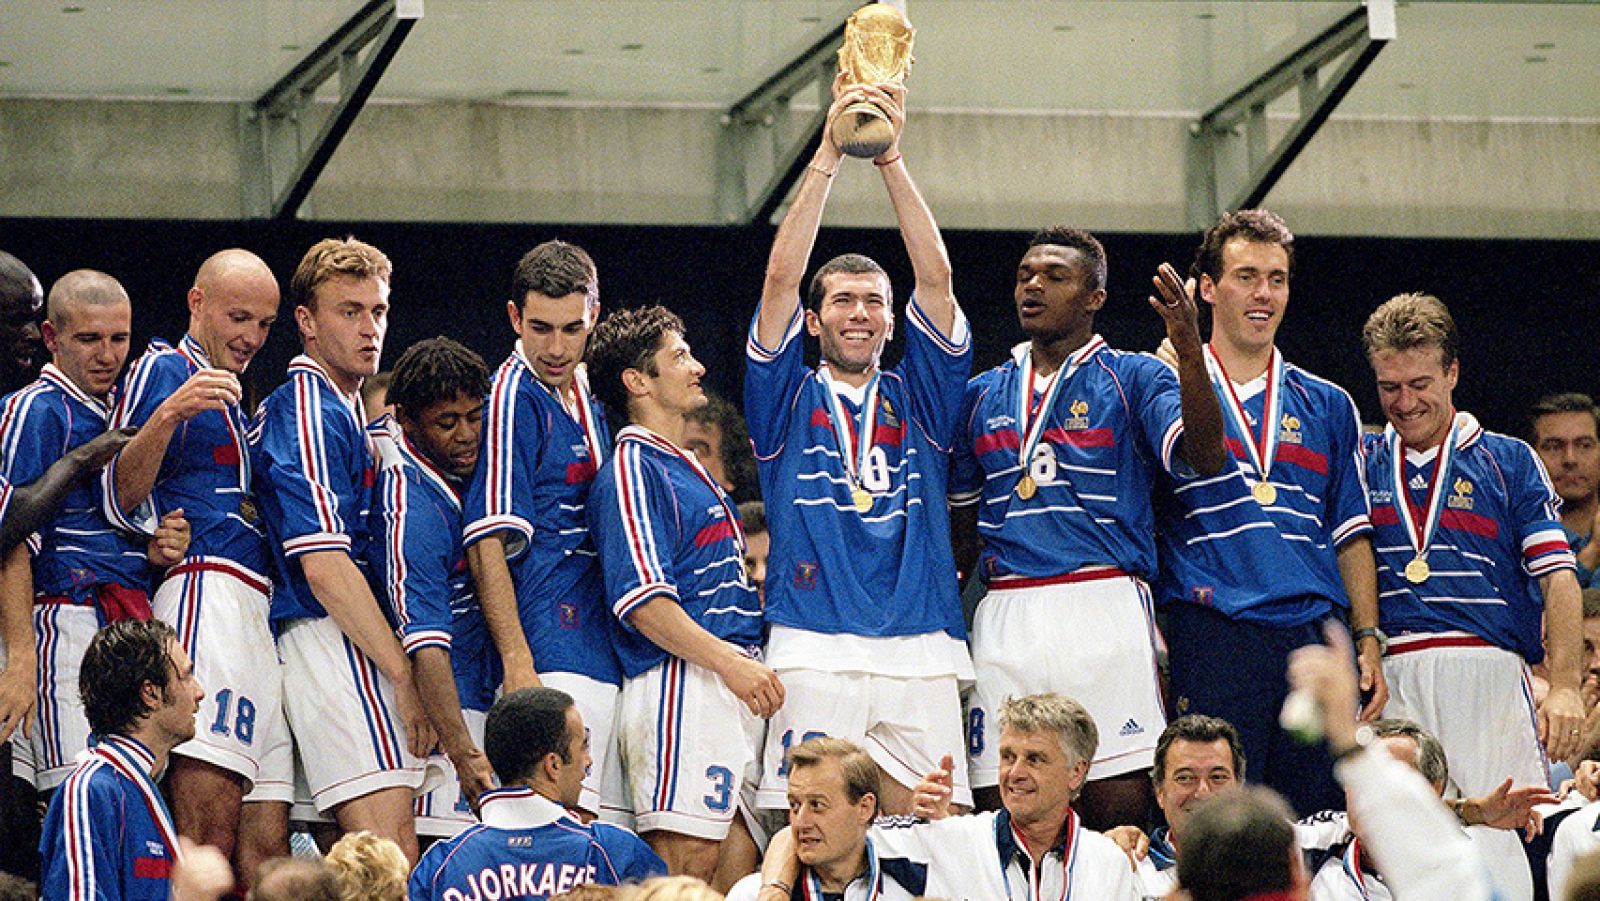 Francia ganó 3 a 0 a la todopoderosa Brasil en la final de Saint Denis. Zidane, con sus dos goles, se ganó el cielo y comenzó la fiesta que vivió París esa noche.